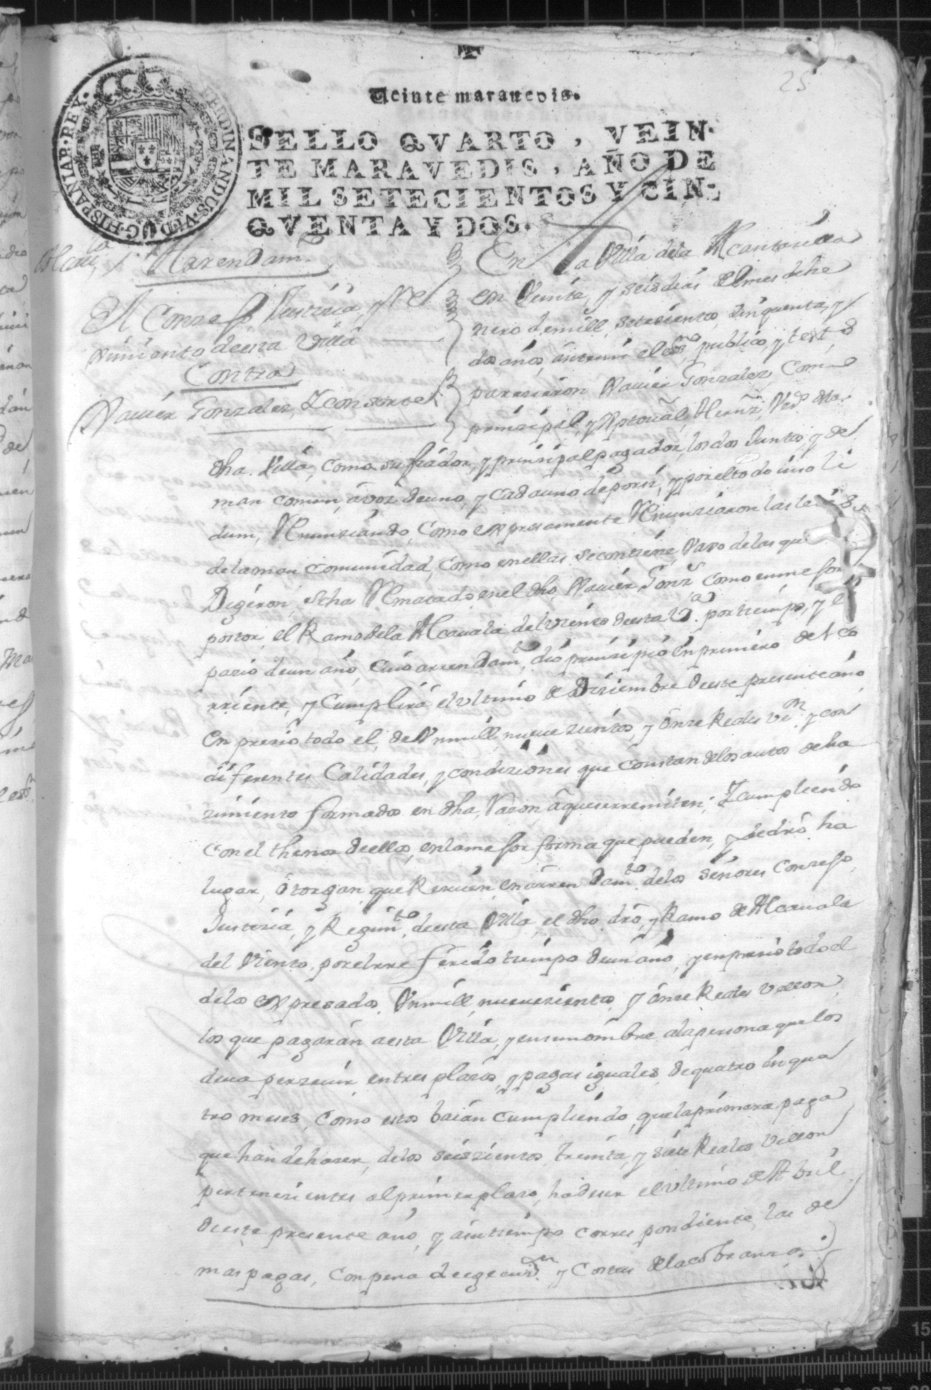 Registro de José Gil Albaladejo, Alcantarilla. Año 1752.